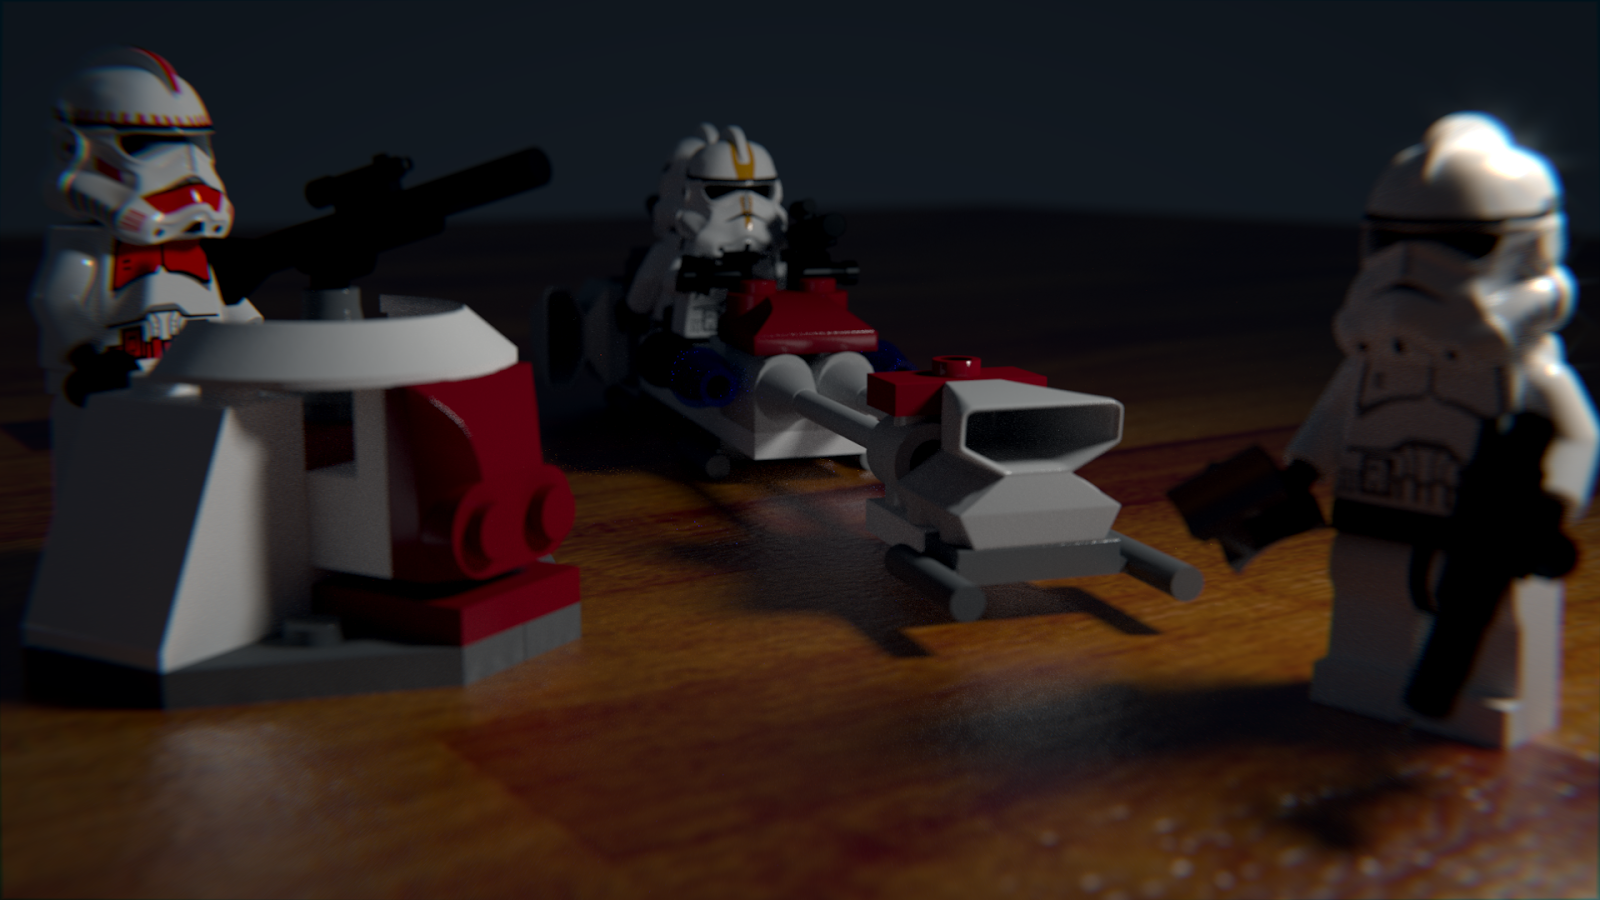 Lego Star Wars Blender Render